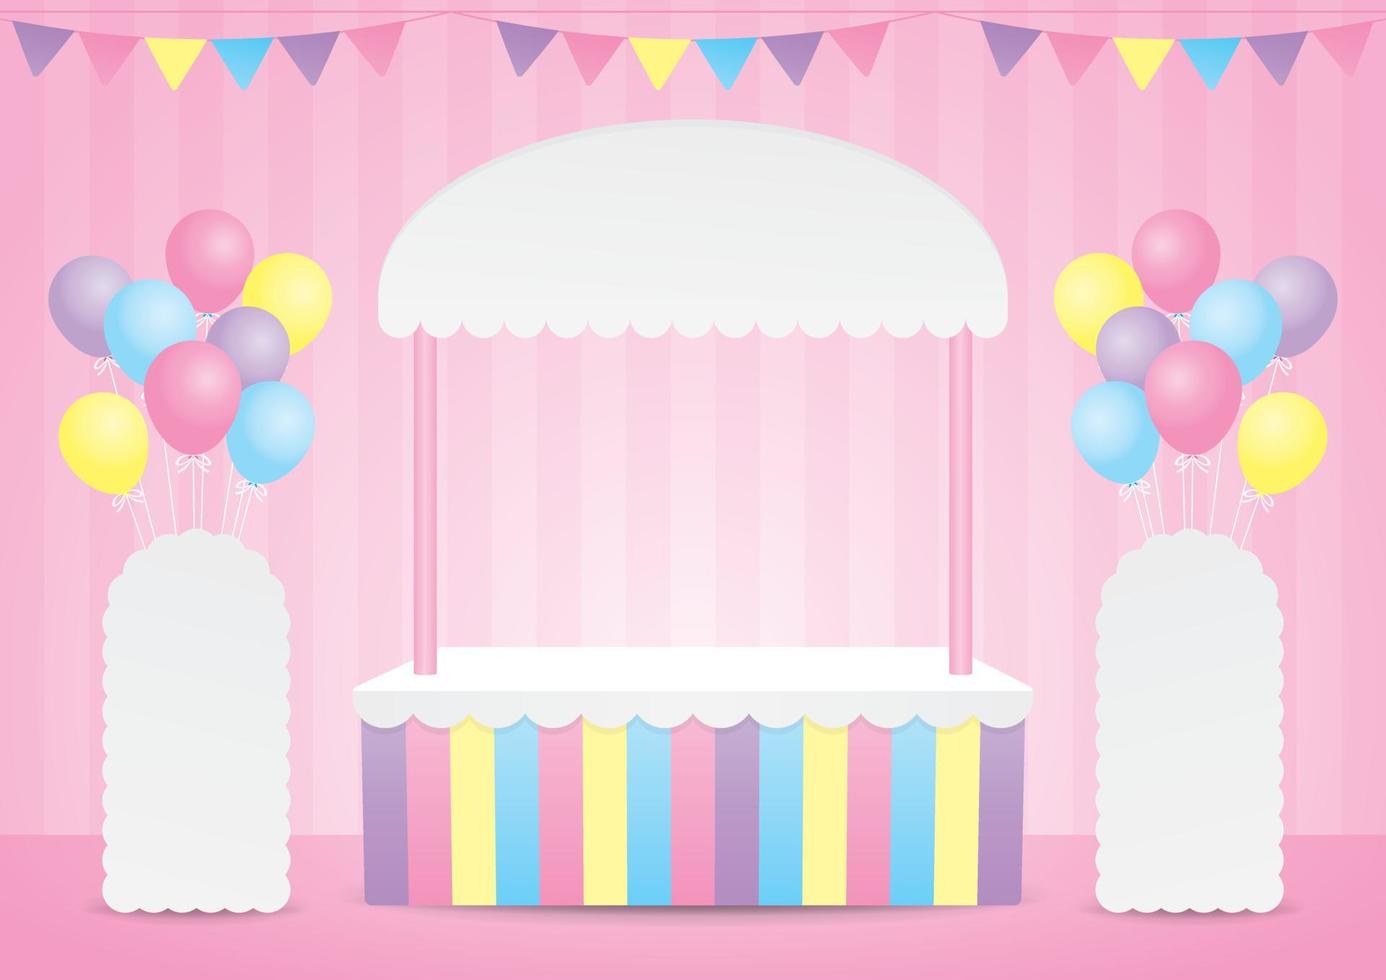 carino stile kawaii pop up store 3d illustrazione vettoriale con segno standee e palloncini colorati pastello su pavimento e parete rosa dolce